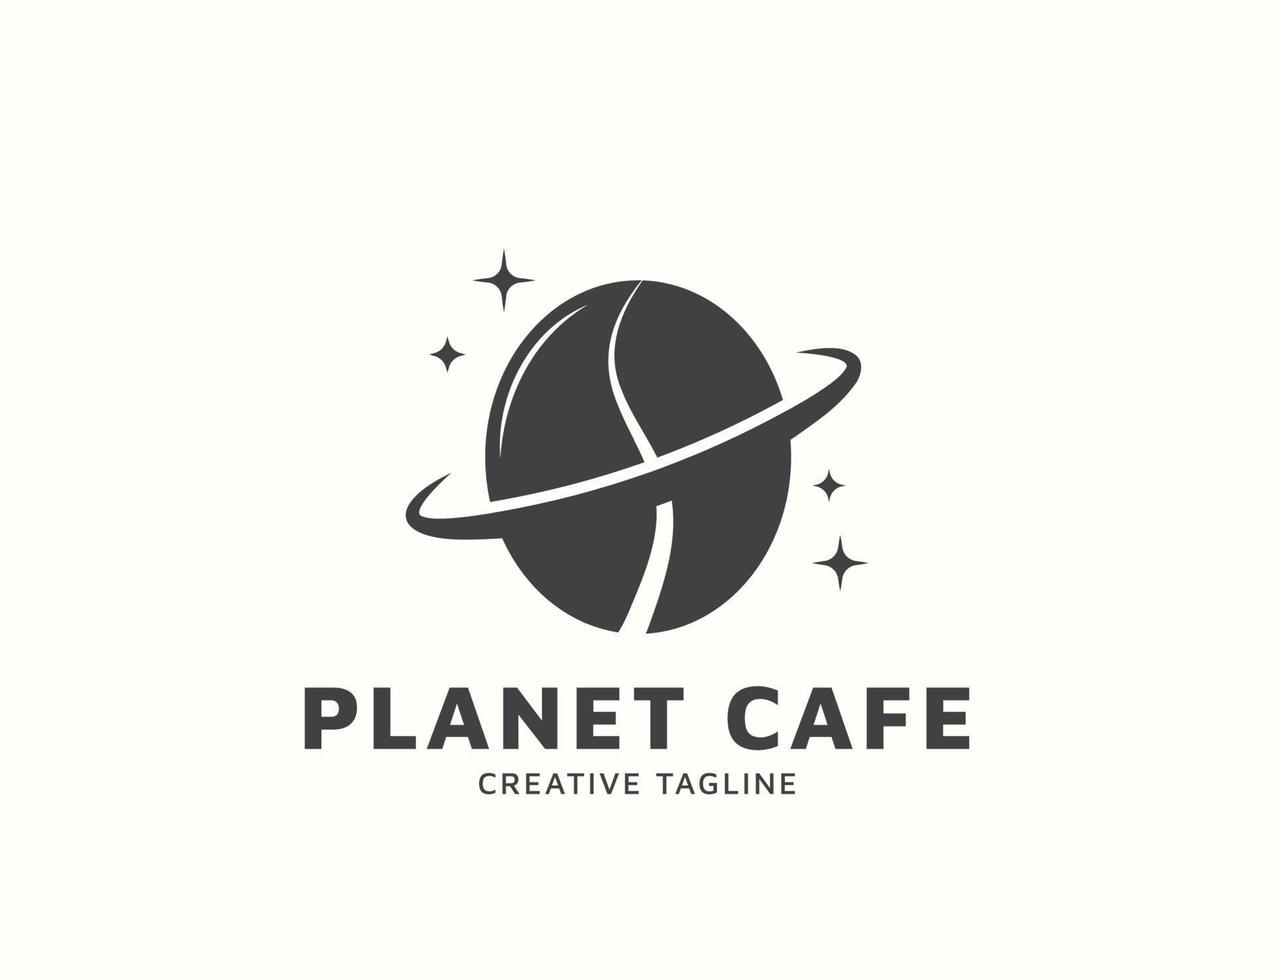 Coffee bean planet cafe logo design vector